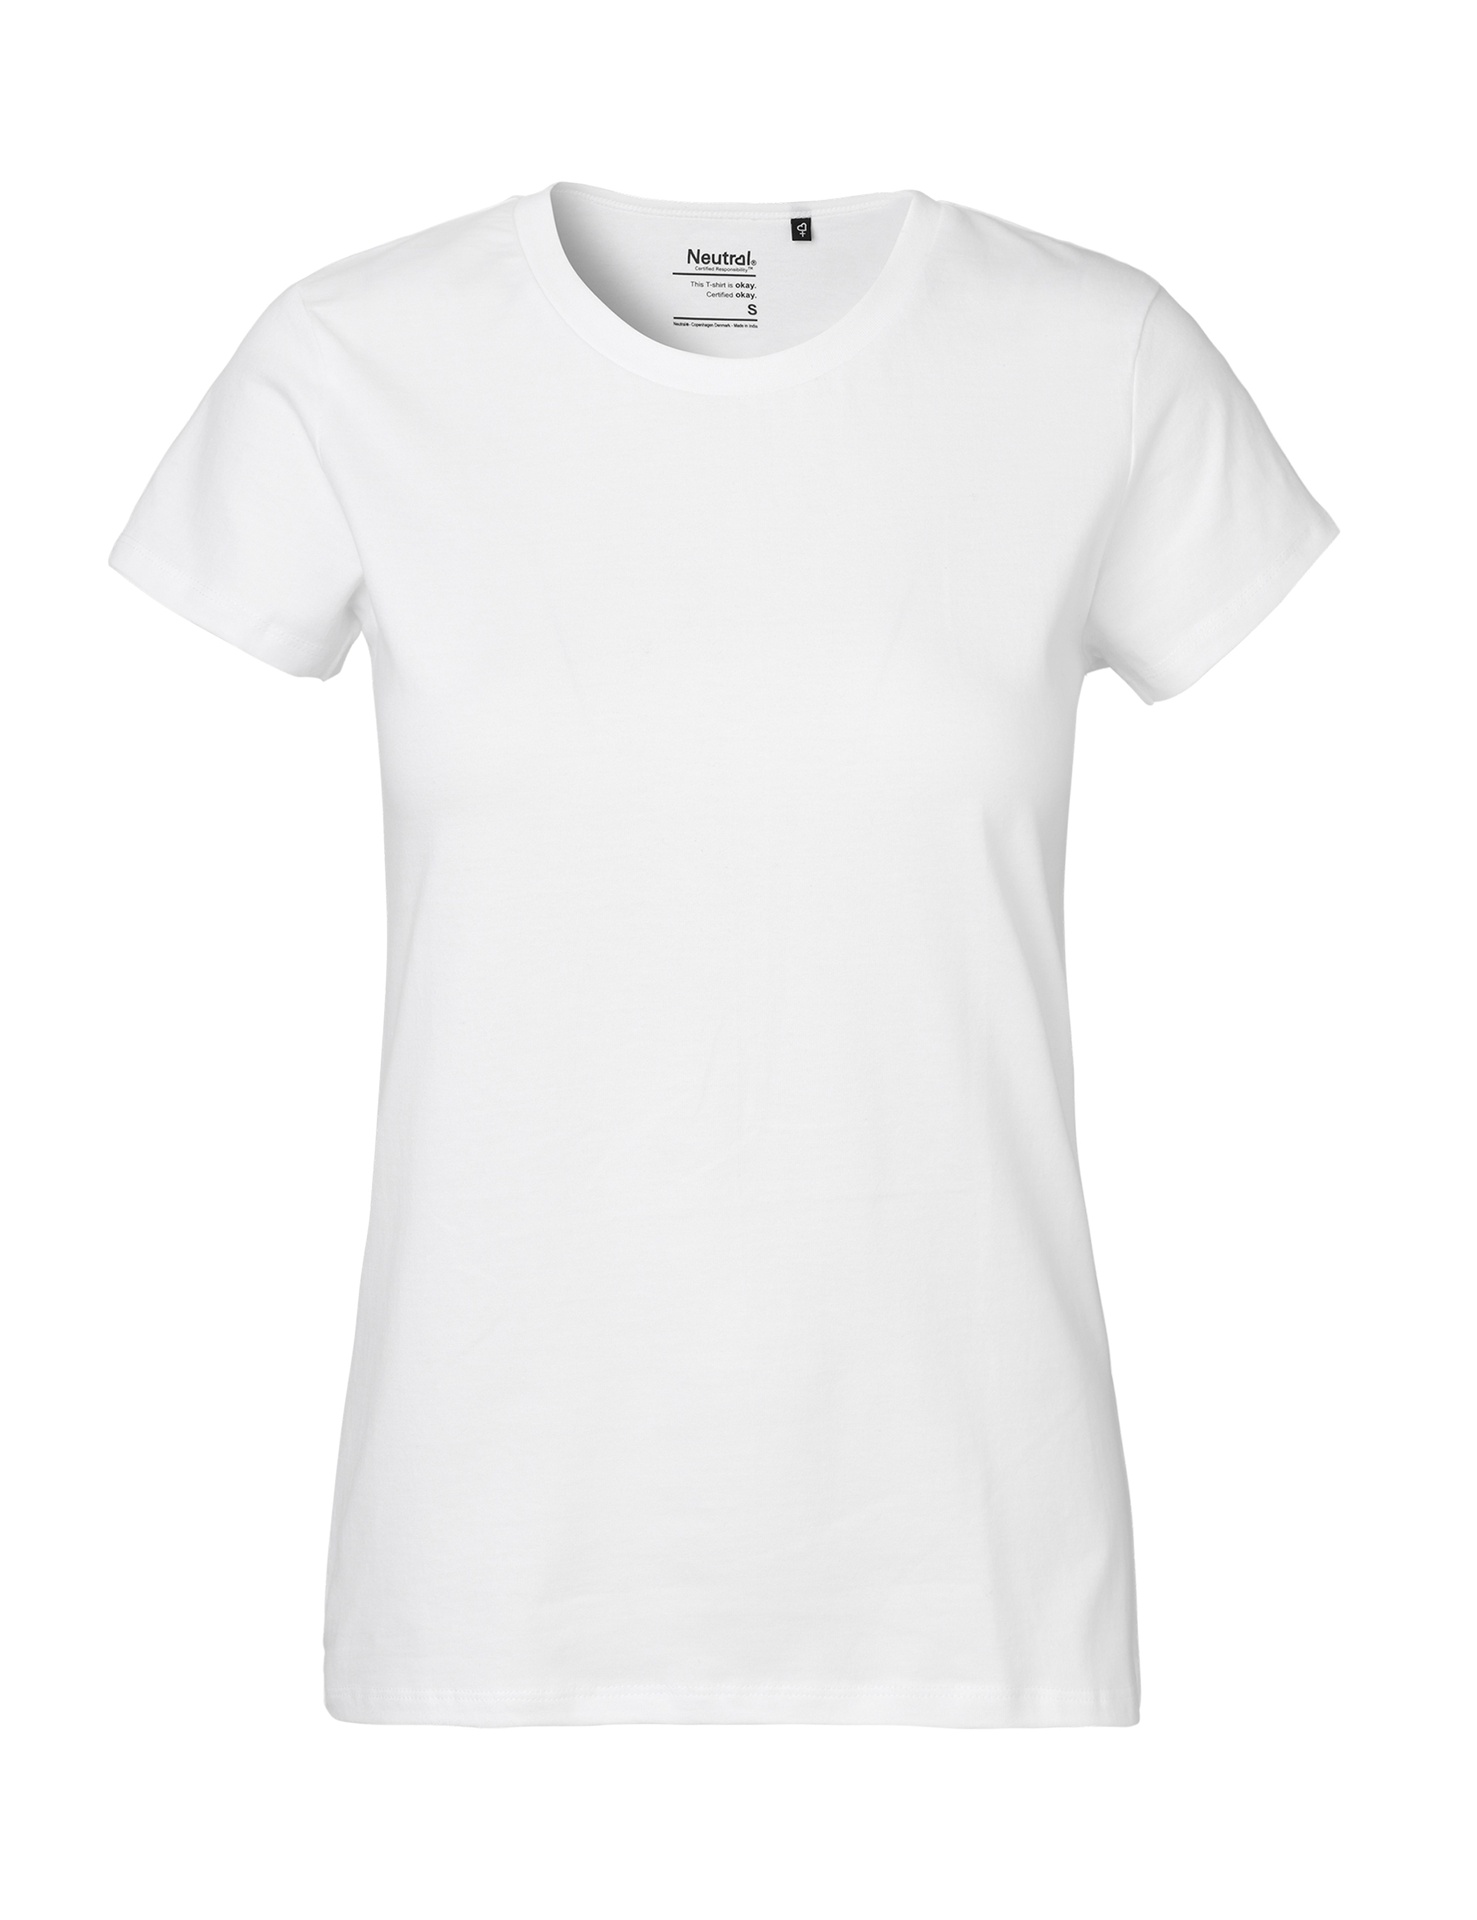 [PR/03992] Ladies Classic T-Shirt (White 01, S)